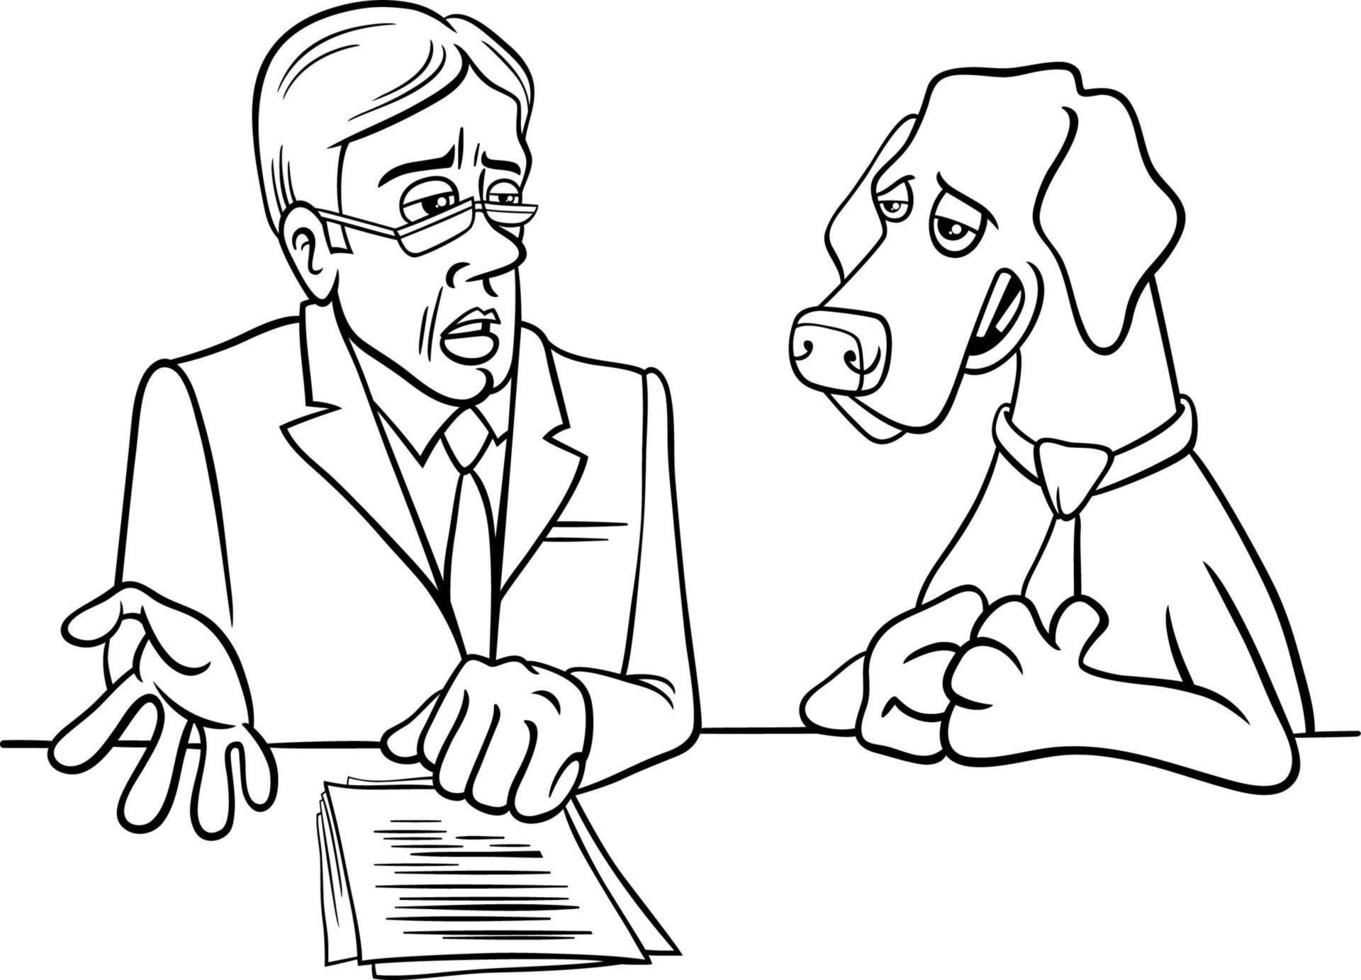 chien de dessin animé donnant une interview à colorier vecteur